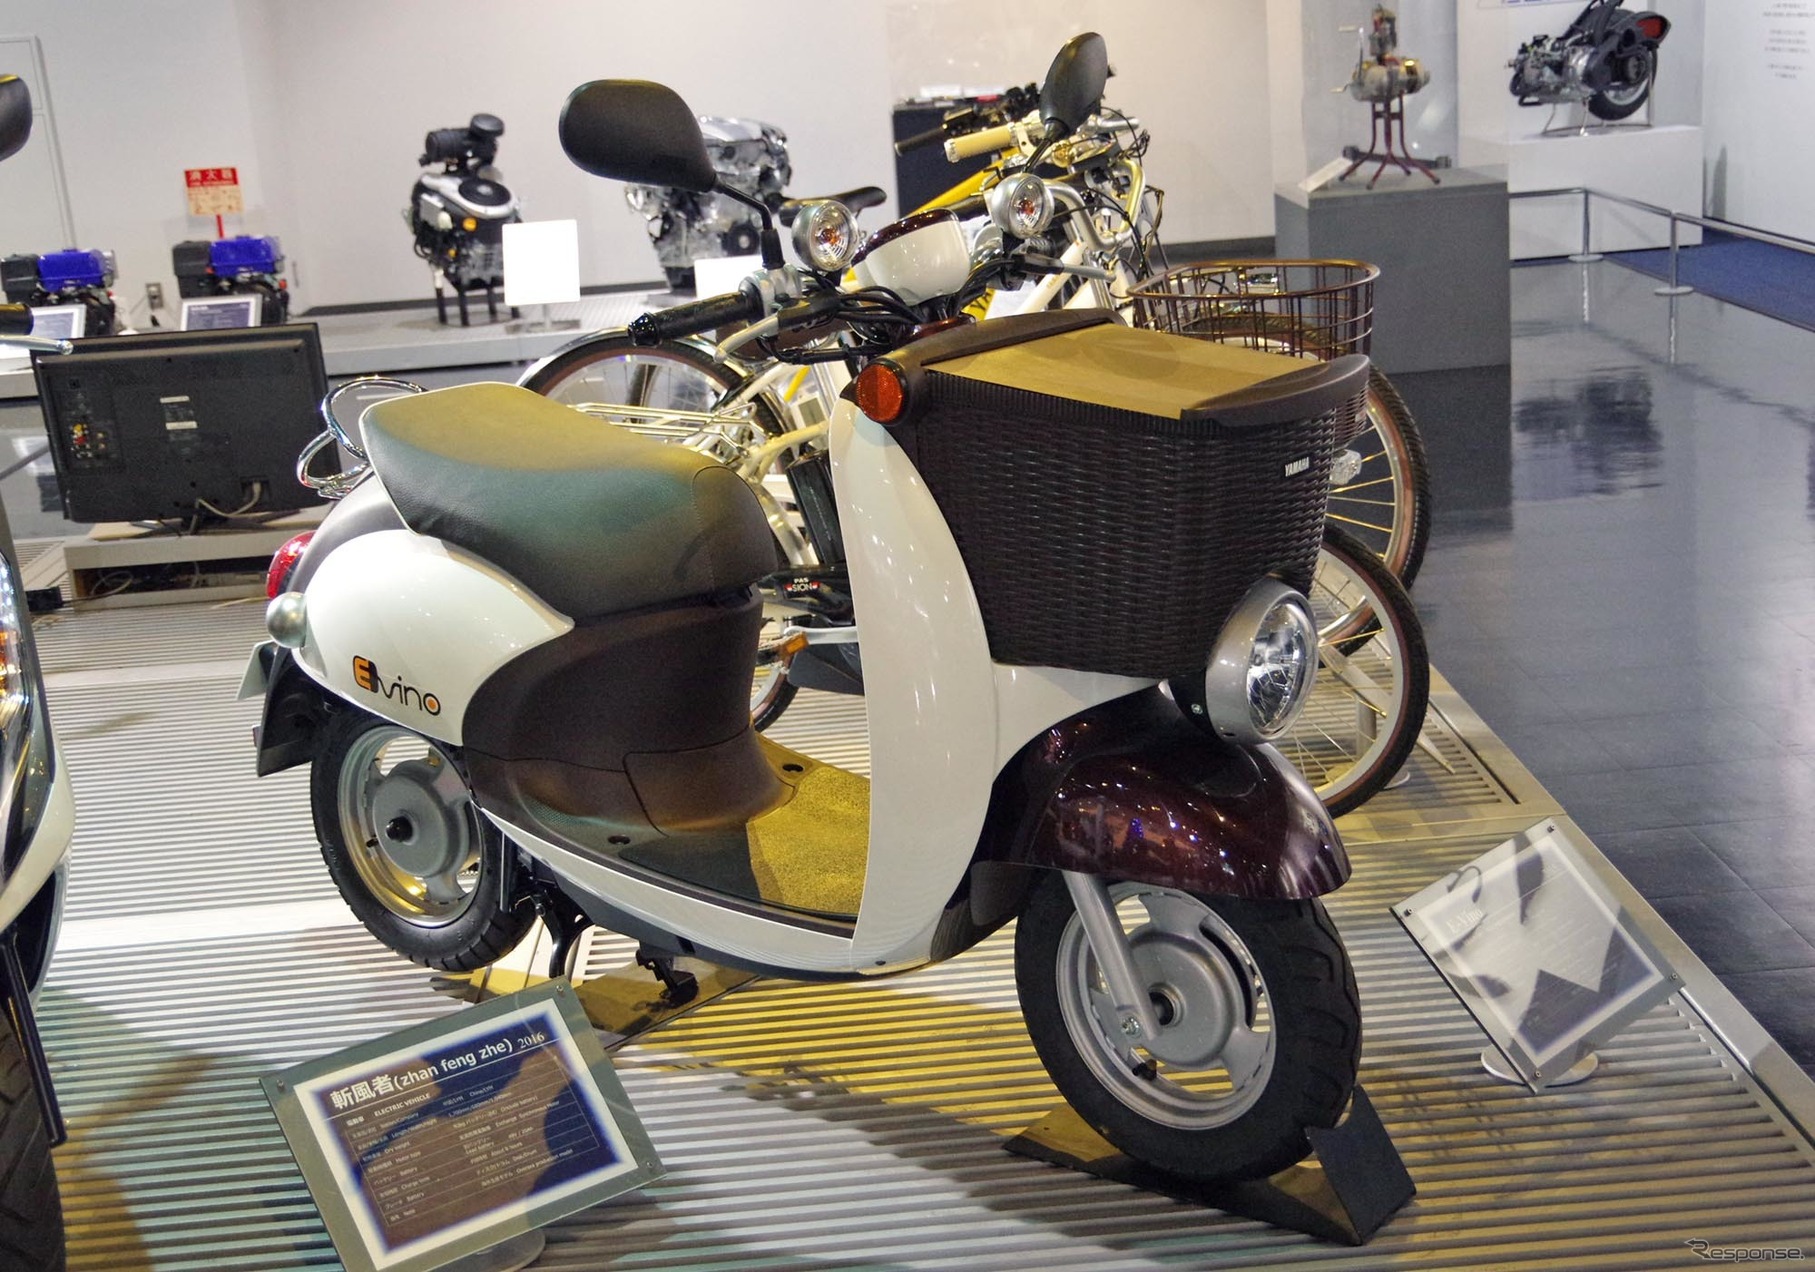 ヤマハの電動バイク「E-ビーノ」